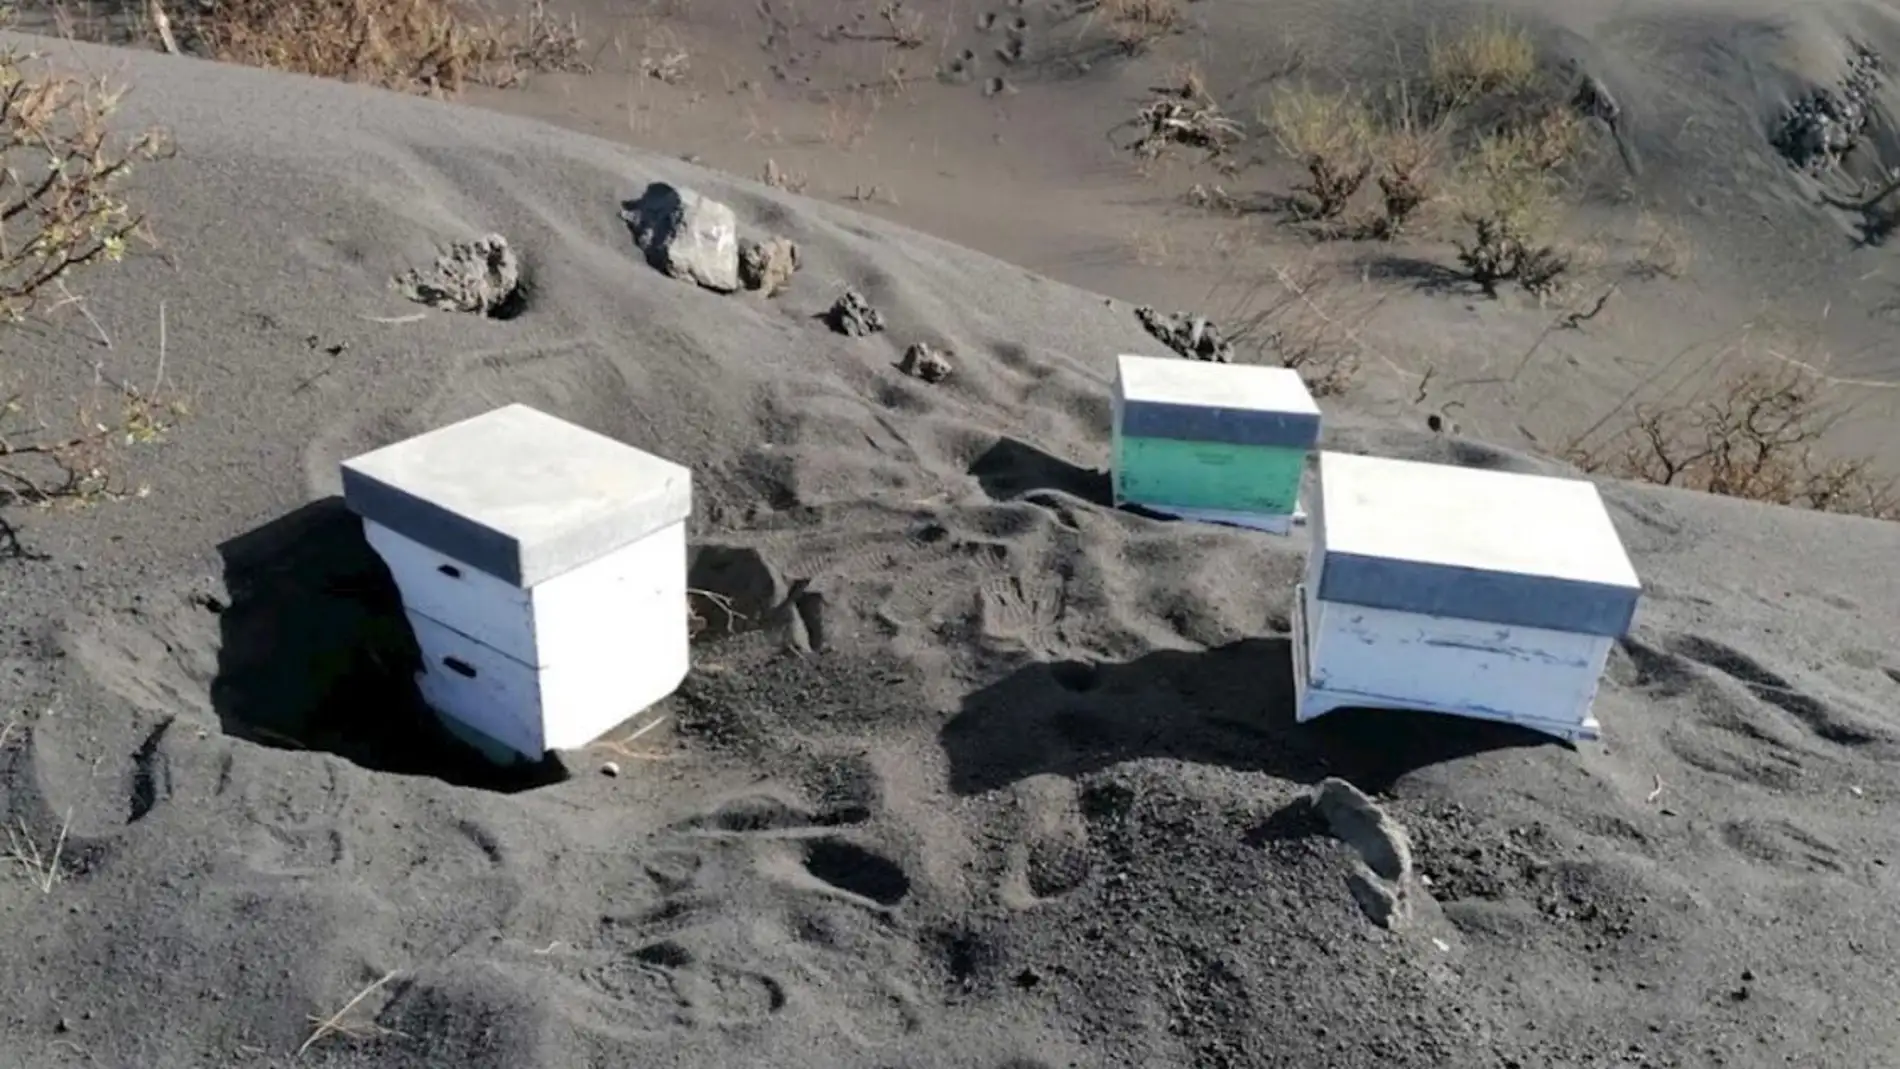 Miles de abejas sobreviven sepultadas tras pasar 50 días sepultadas bajo la ceniza del volcán de La Palma